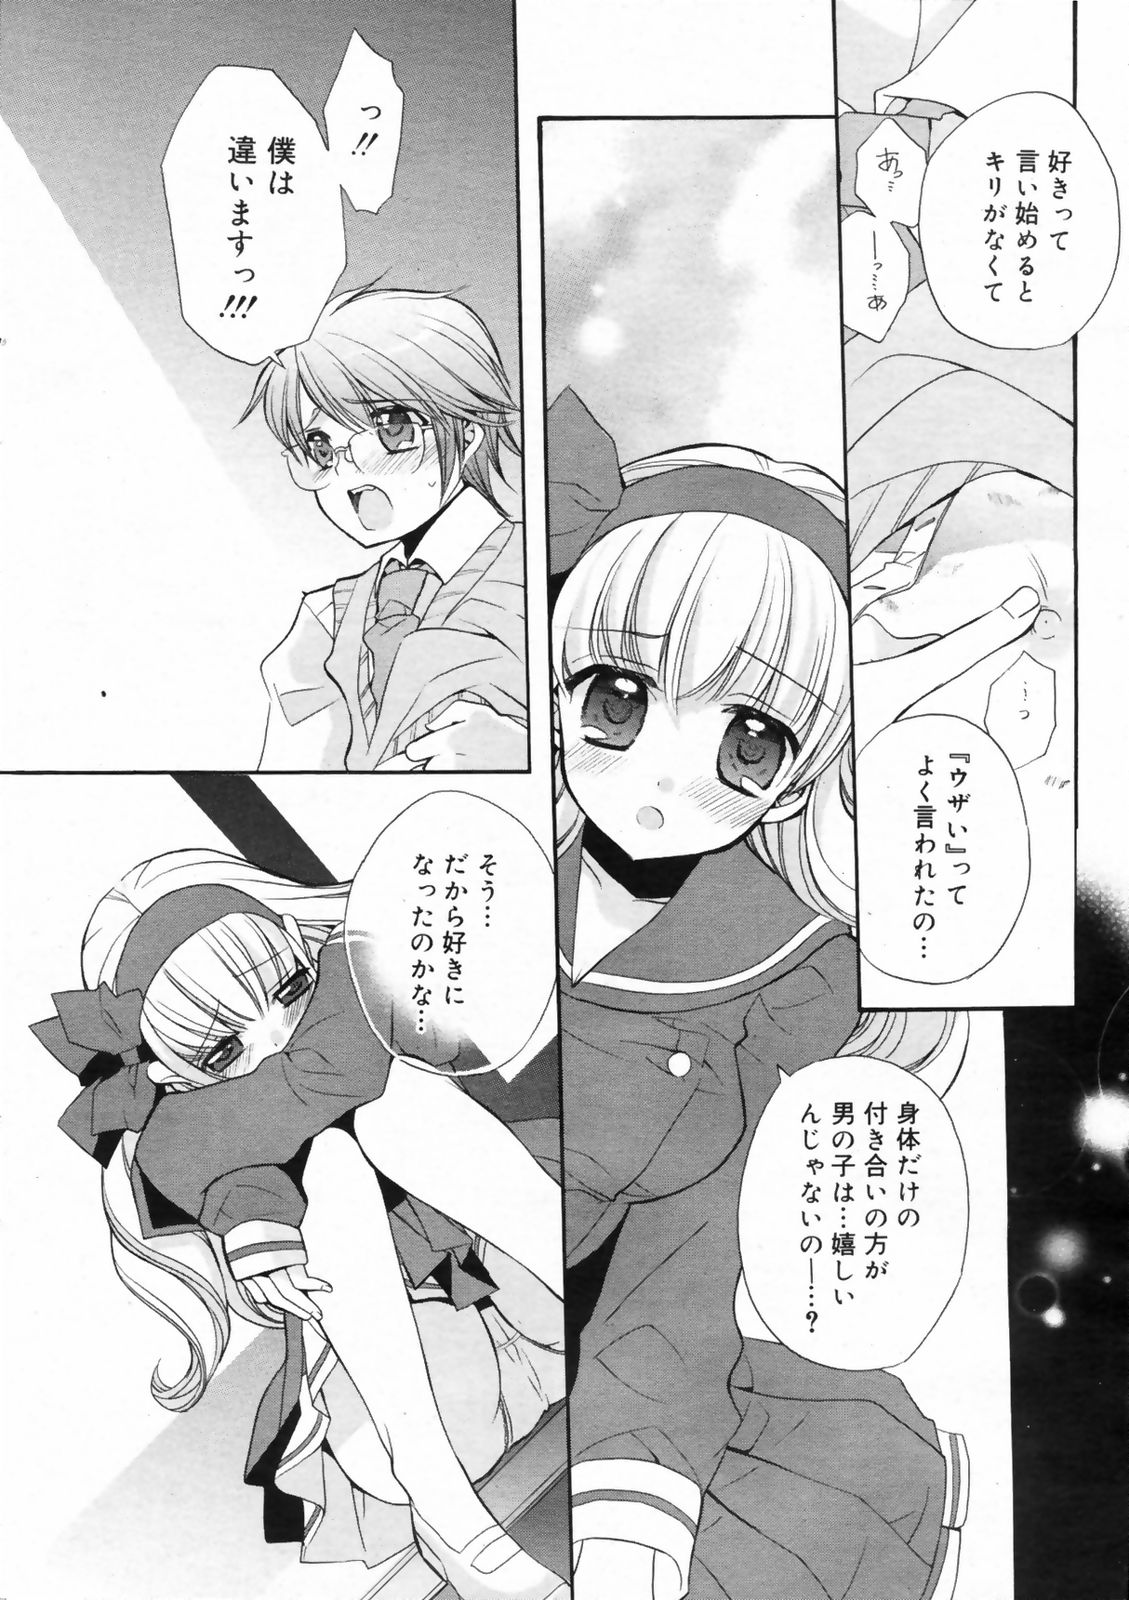 Manga Bangaichi 2009-02 Vol. 234 page 12 full